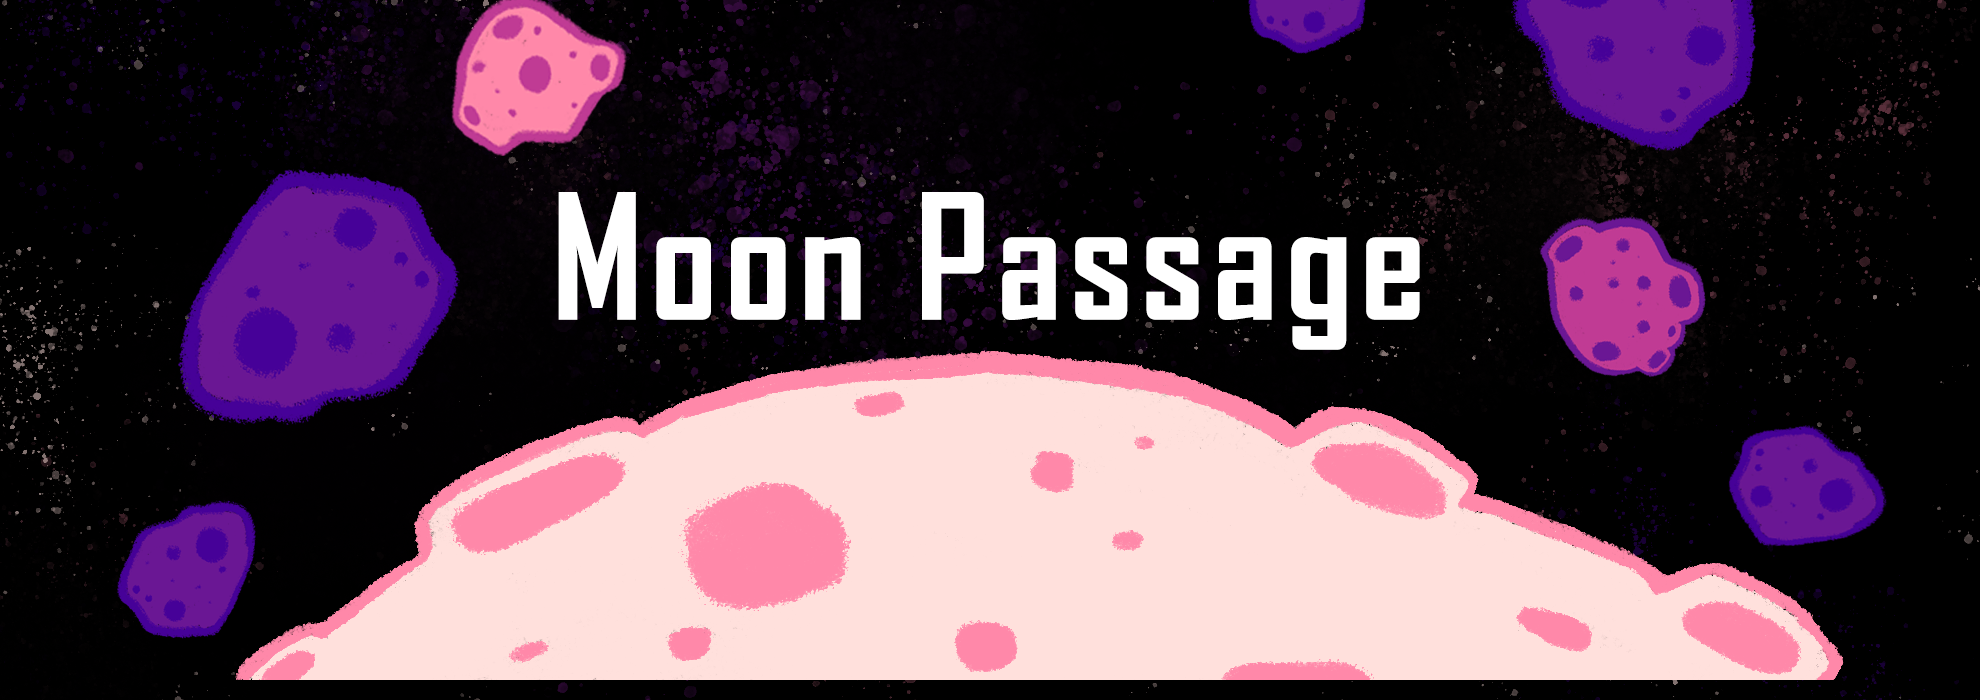 Moon Passage